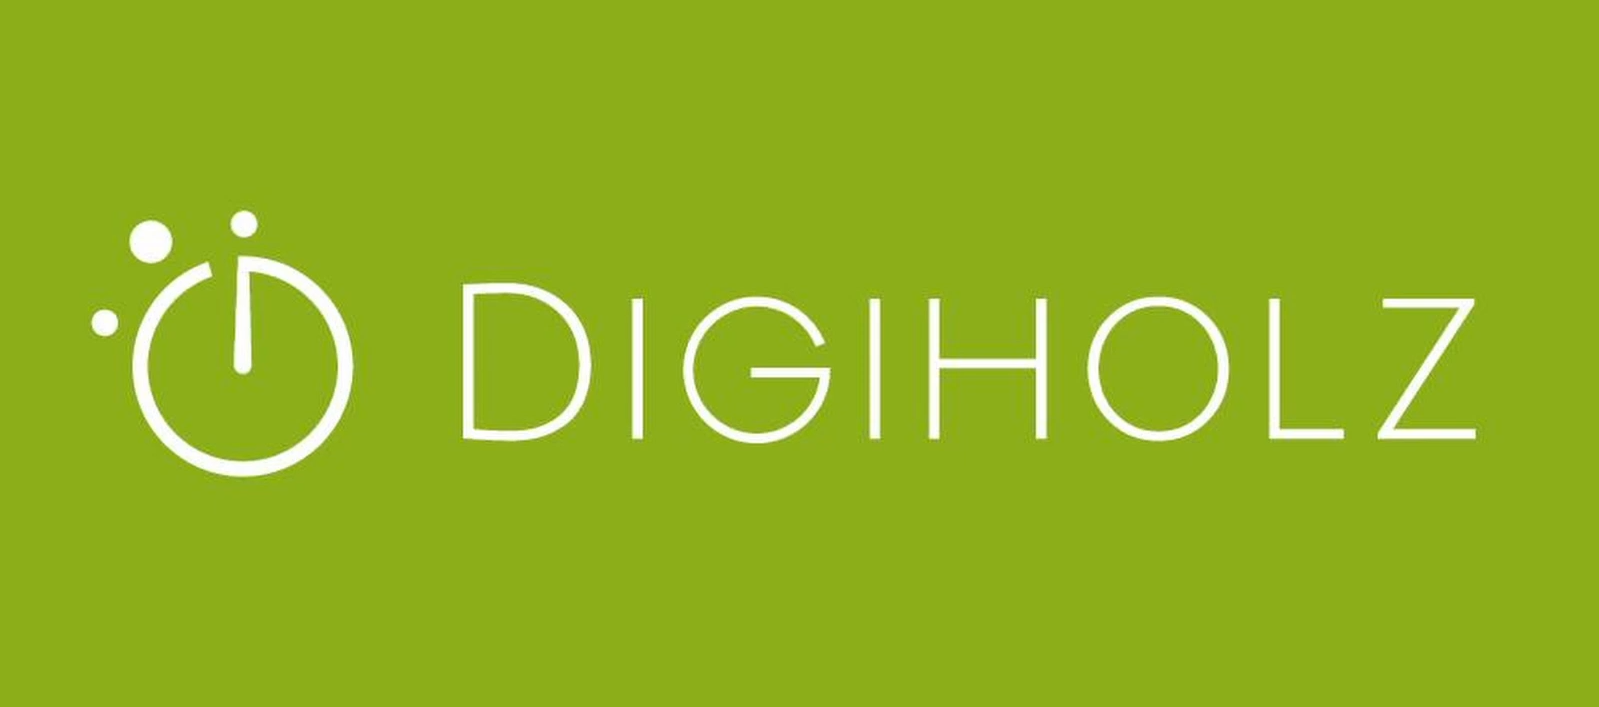 DIGIHOLZ - Intuitive & digitale Zeiterfassung für das Handwerk | Zur jährlichen Miete & Nutzung